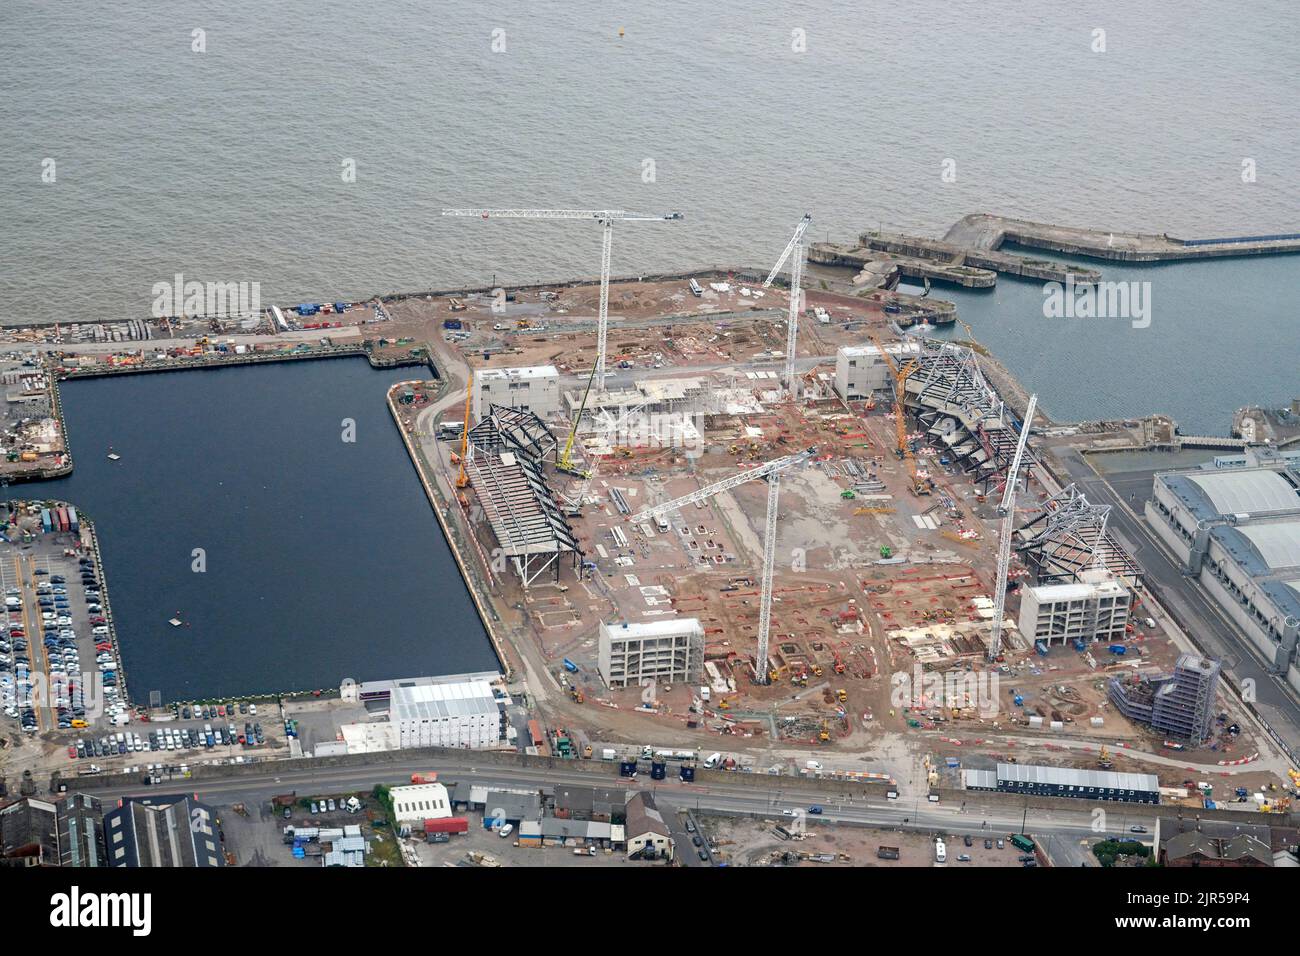 Vue aérienne du nouveau stade Everton en construction, Seaforth Docks, Merseyside, Liverpool, nord-ouest de l'Angleterre Banque D'Images